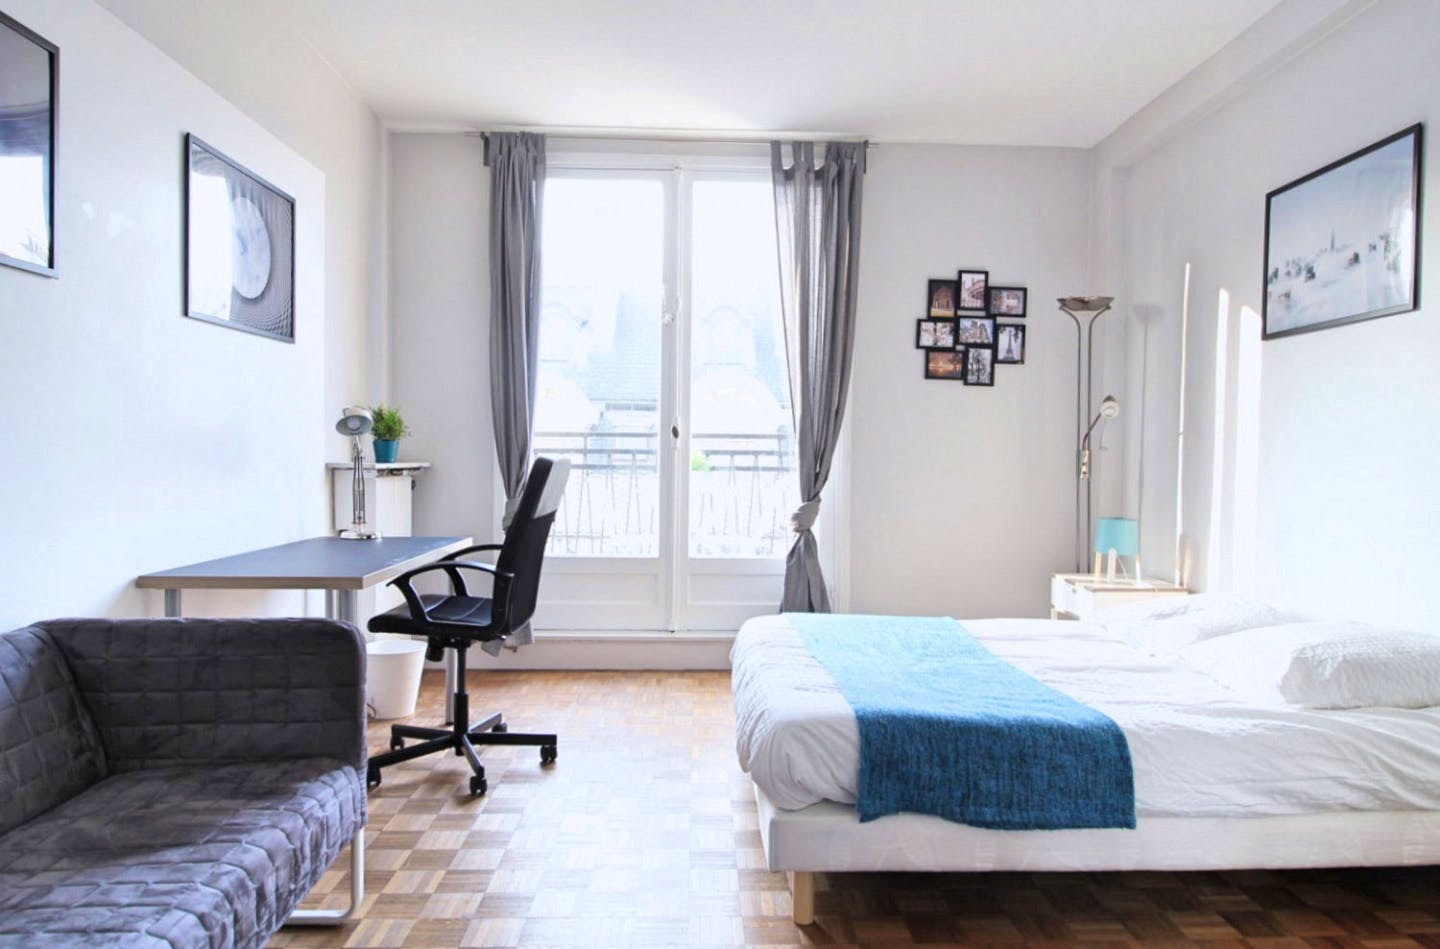 Superb apartment located near the Champs-Élysées